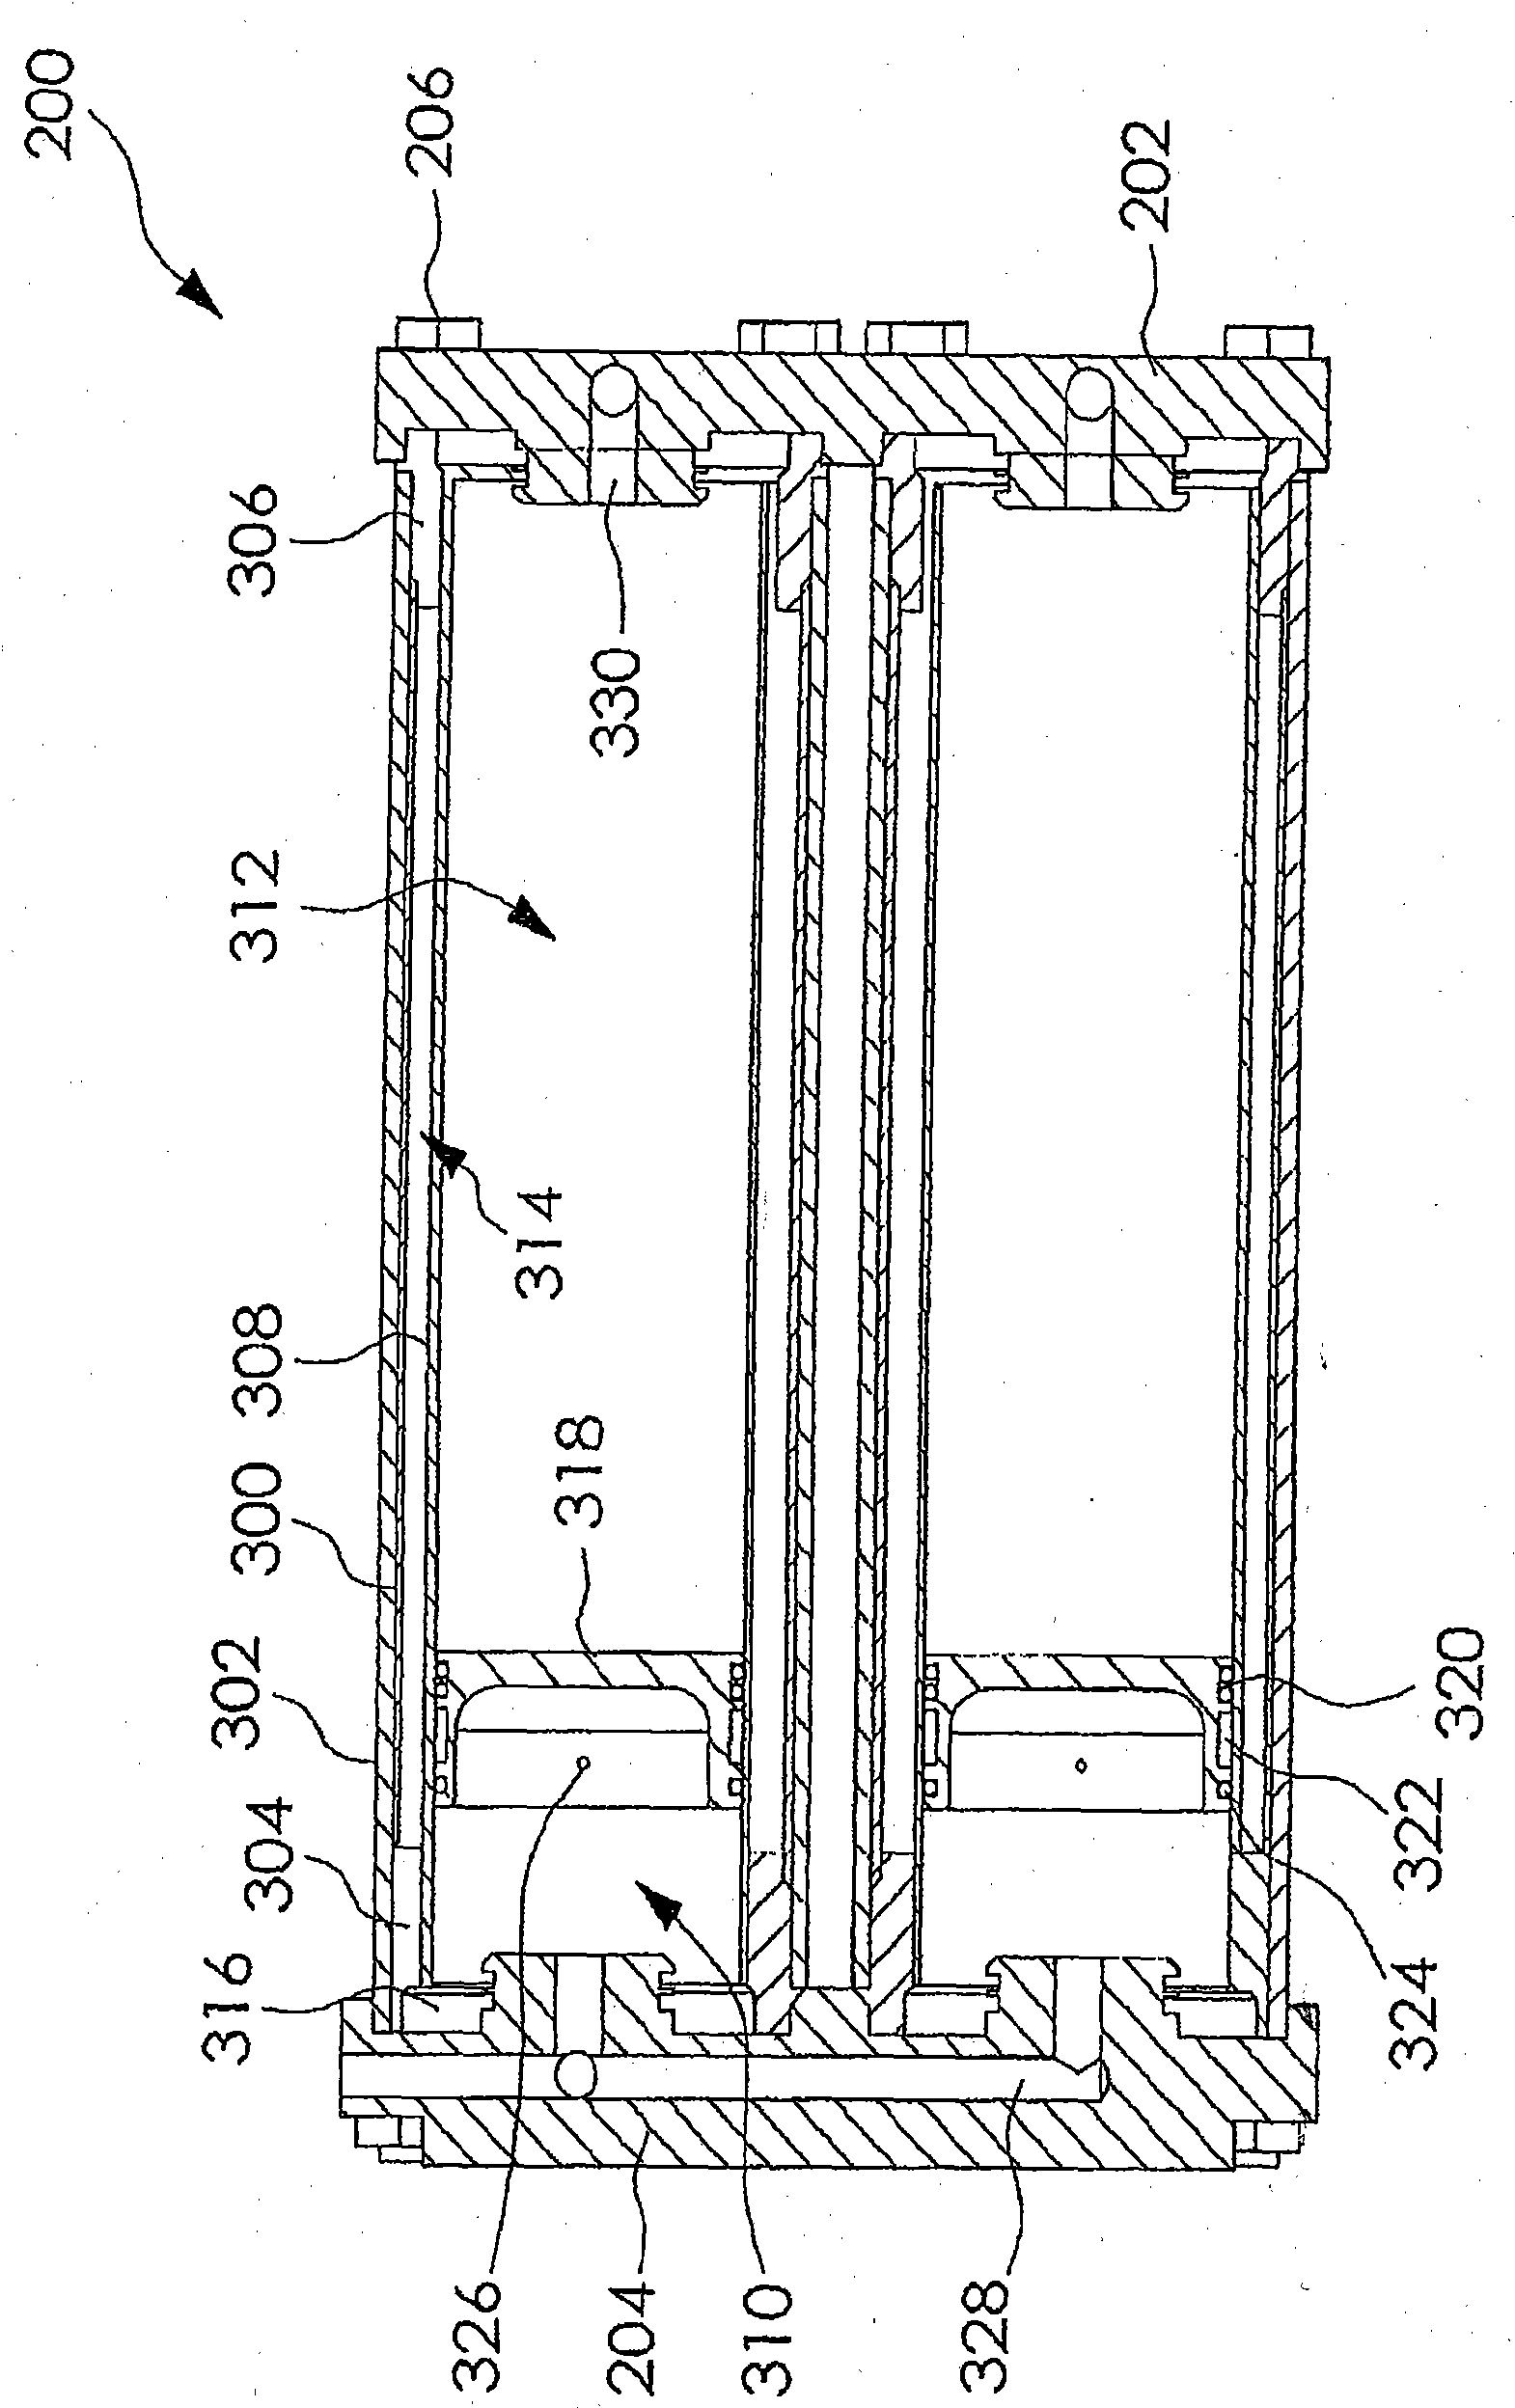 Compact hydraulic accumulator